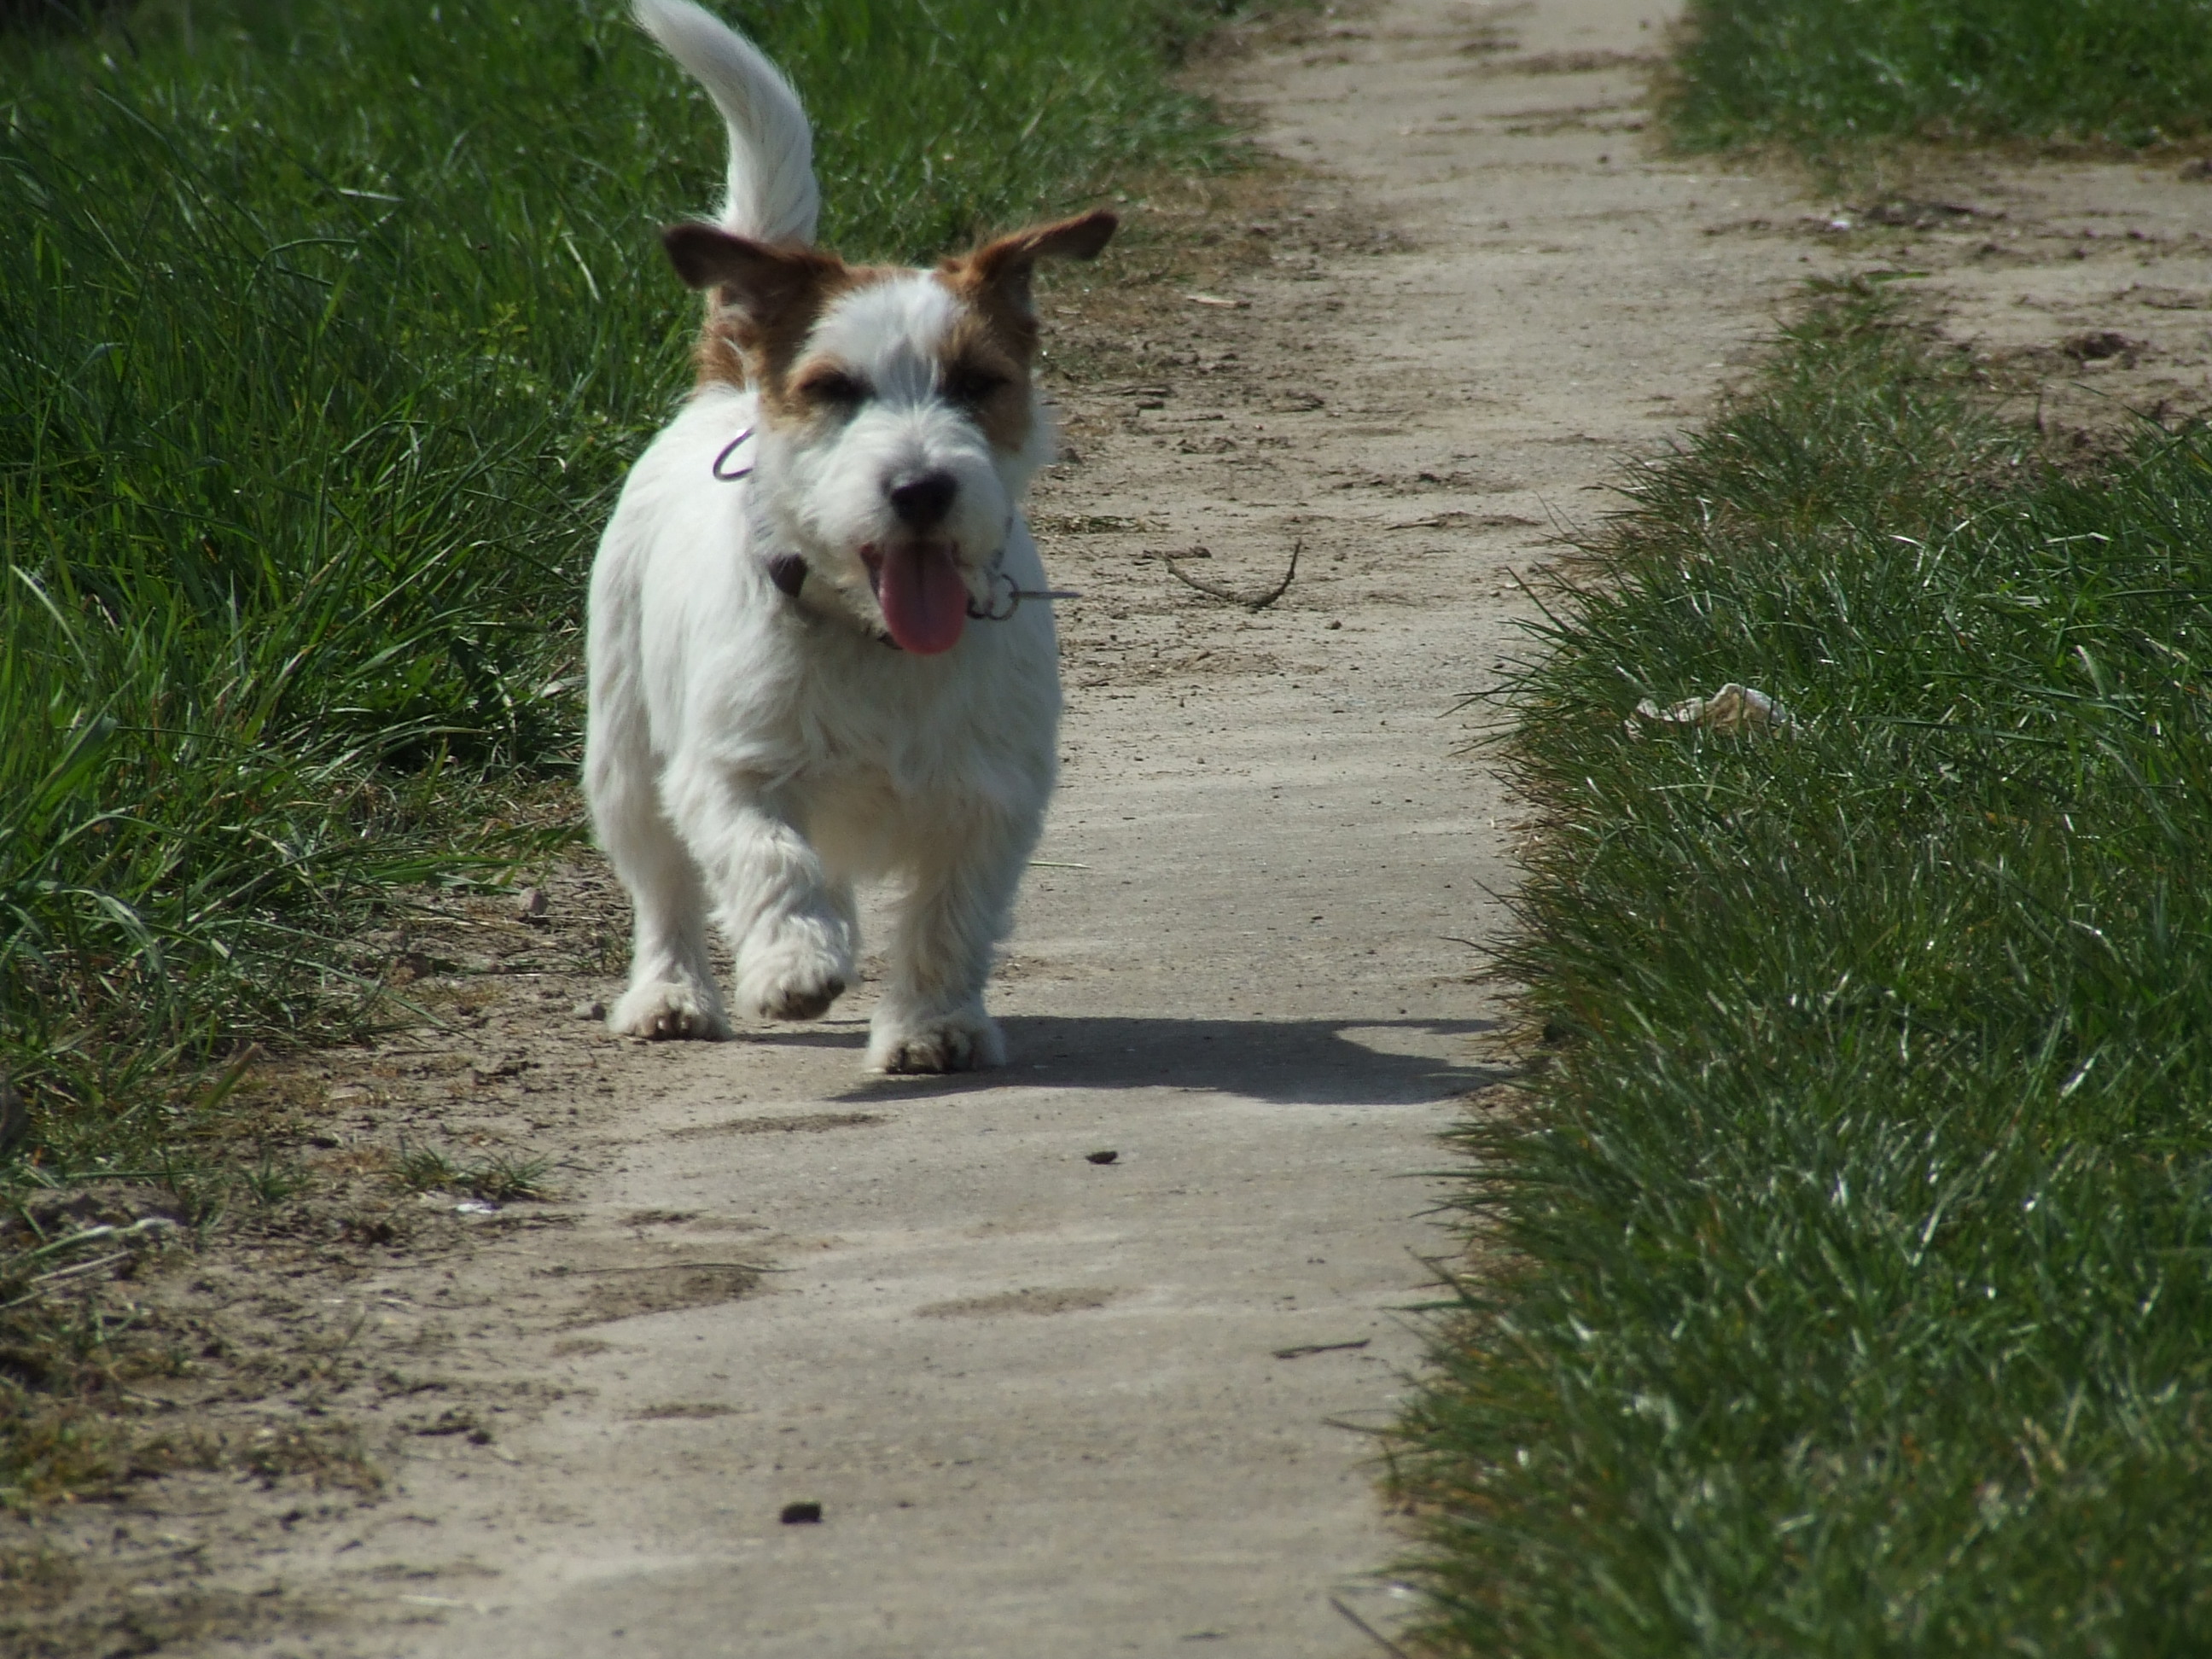 Bei Krankheit, Arztbesuchen oder wenn sich Ihre Arbeitszeiten geändert haben - ich gehe mit Ihrem Hund spazieren!

